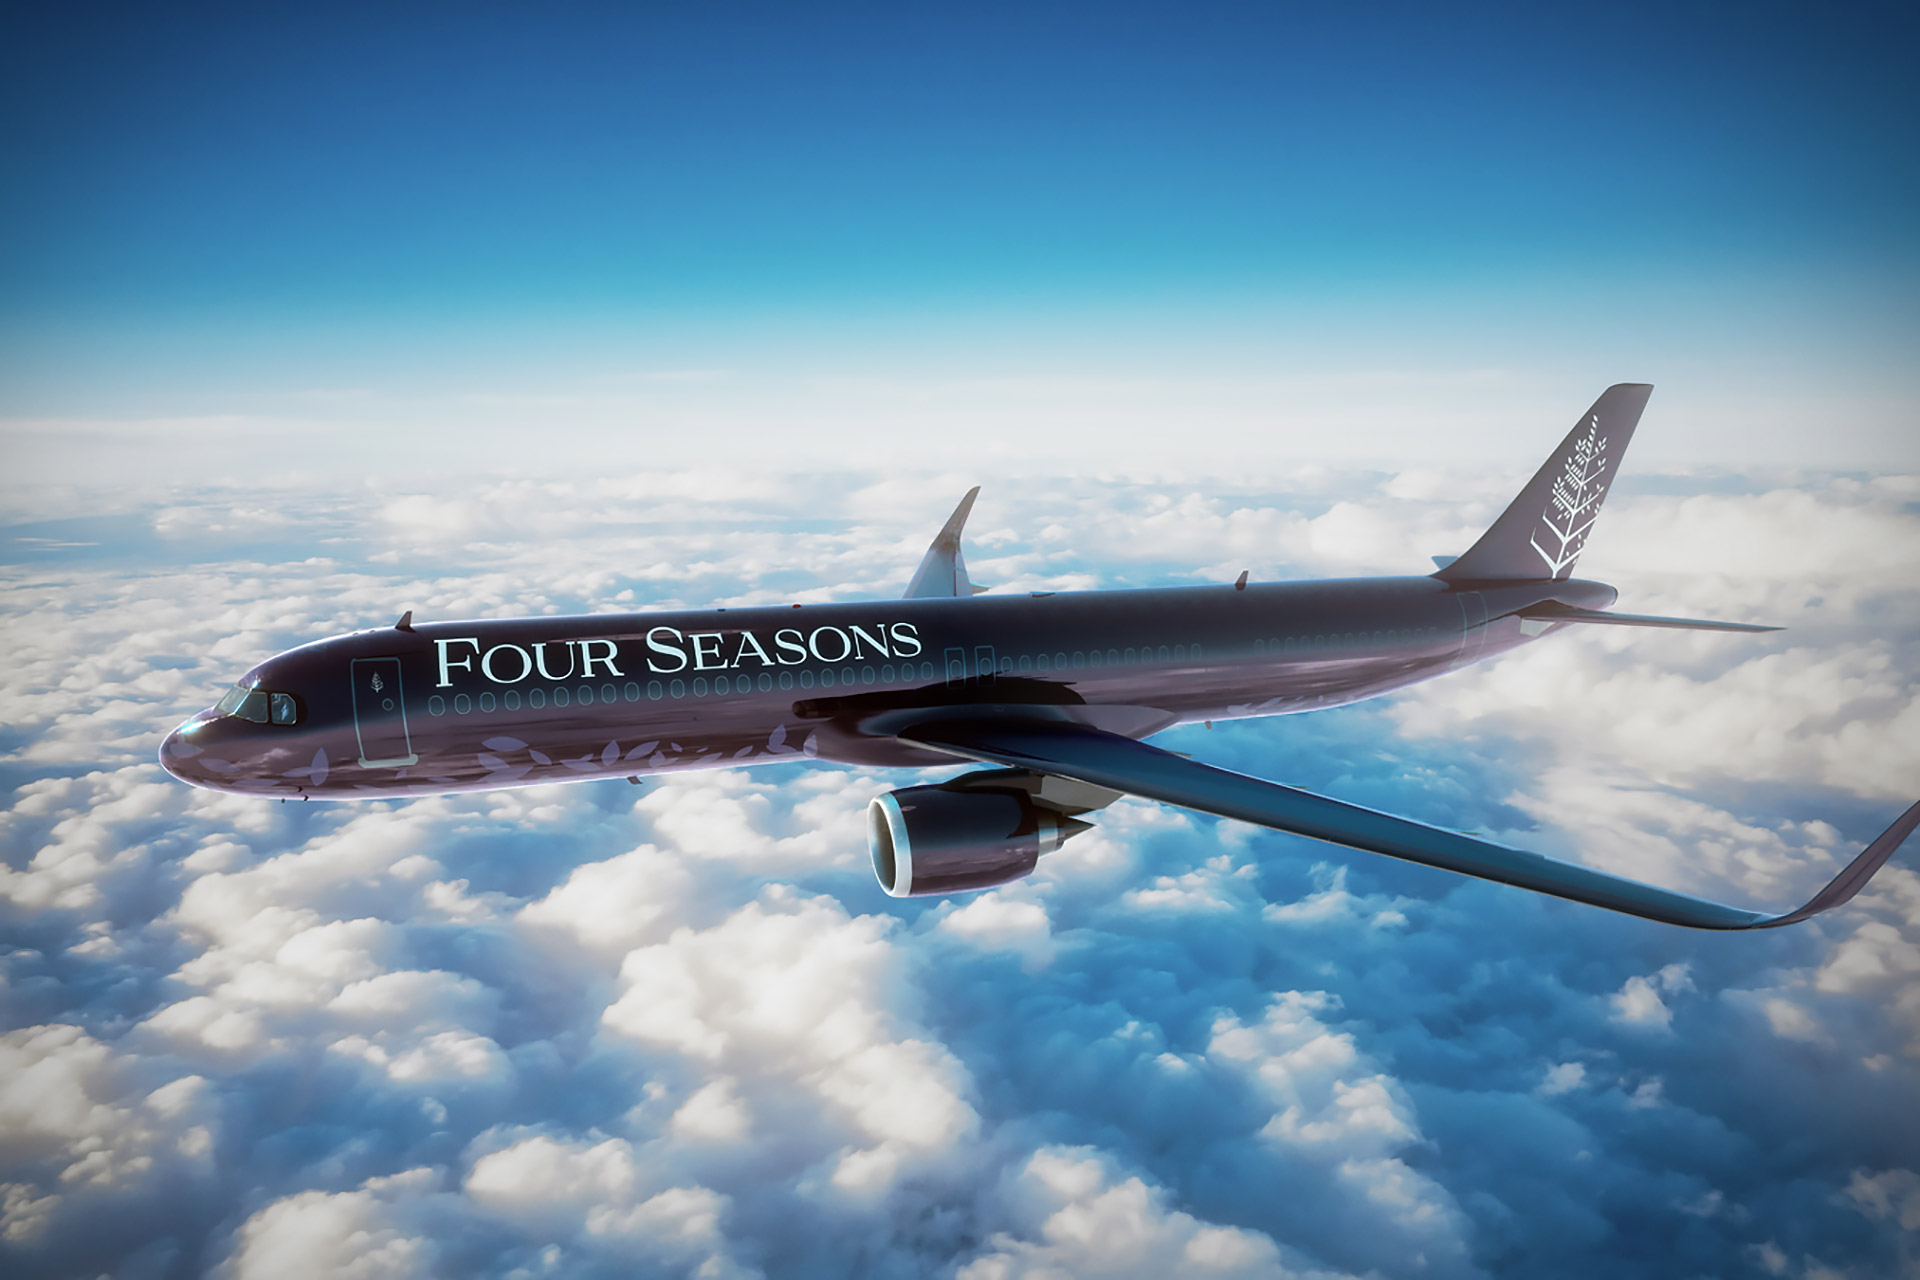 Himmlicher Luxus: Four Seasons präsentiert einen neuen Privatjet 1